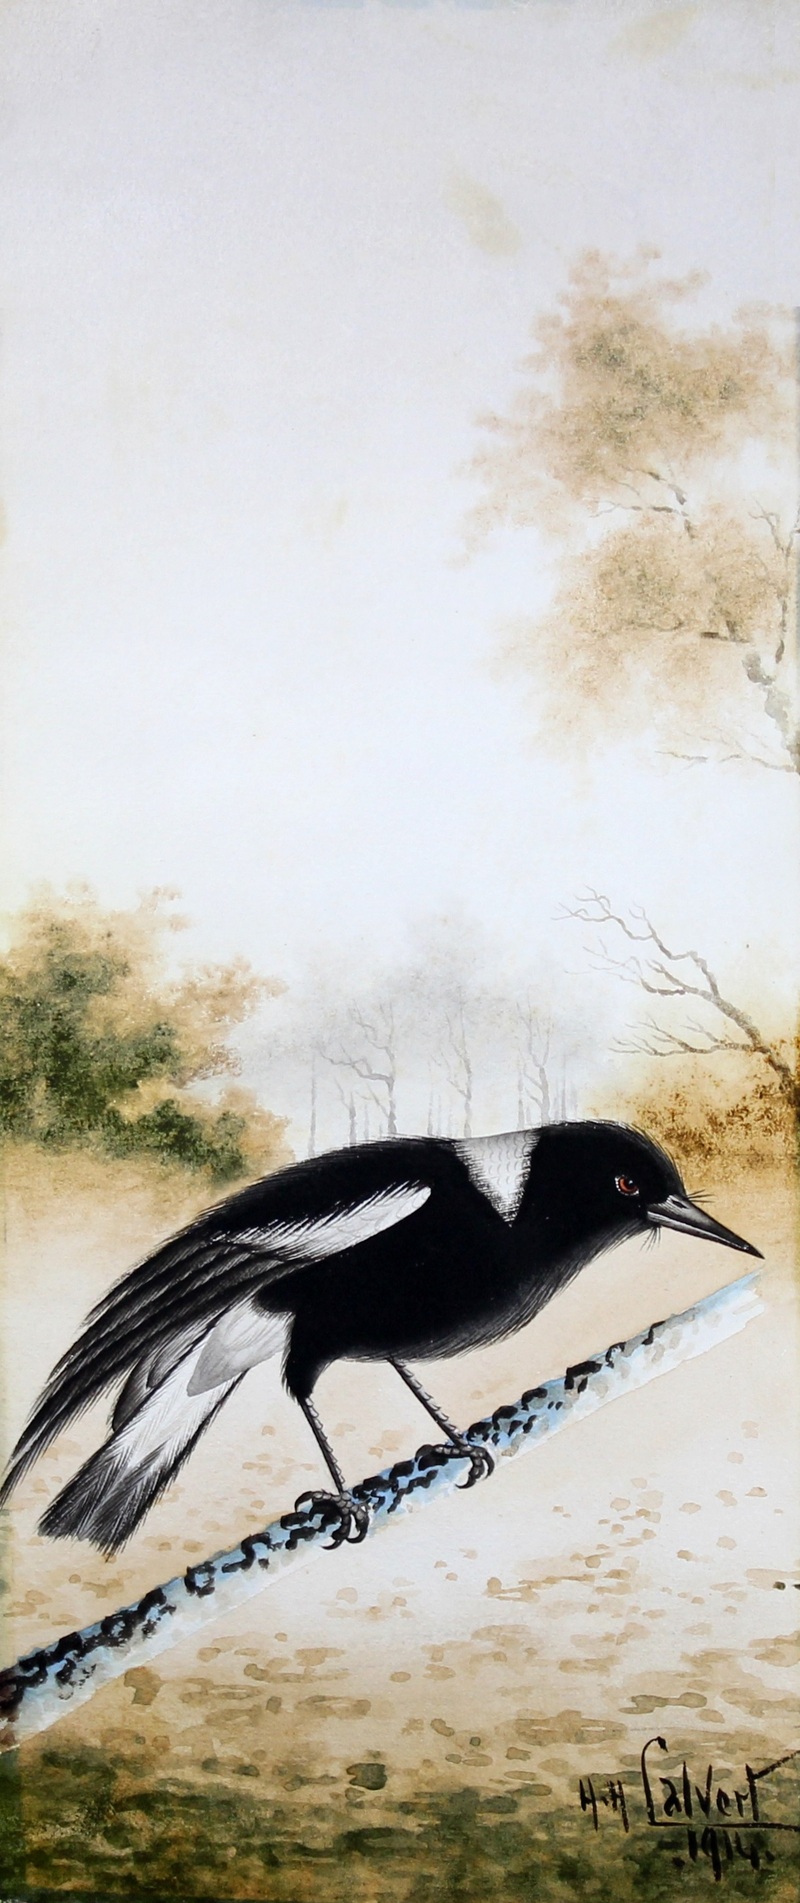 Australian magpie (Cracticus tibicen); DISPLAY FULL IMAGE.